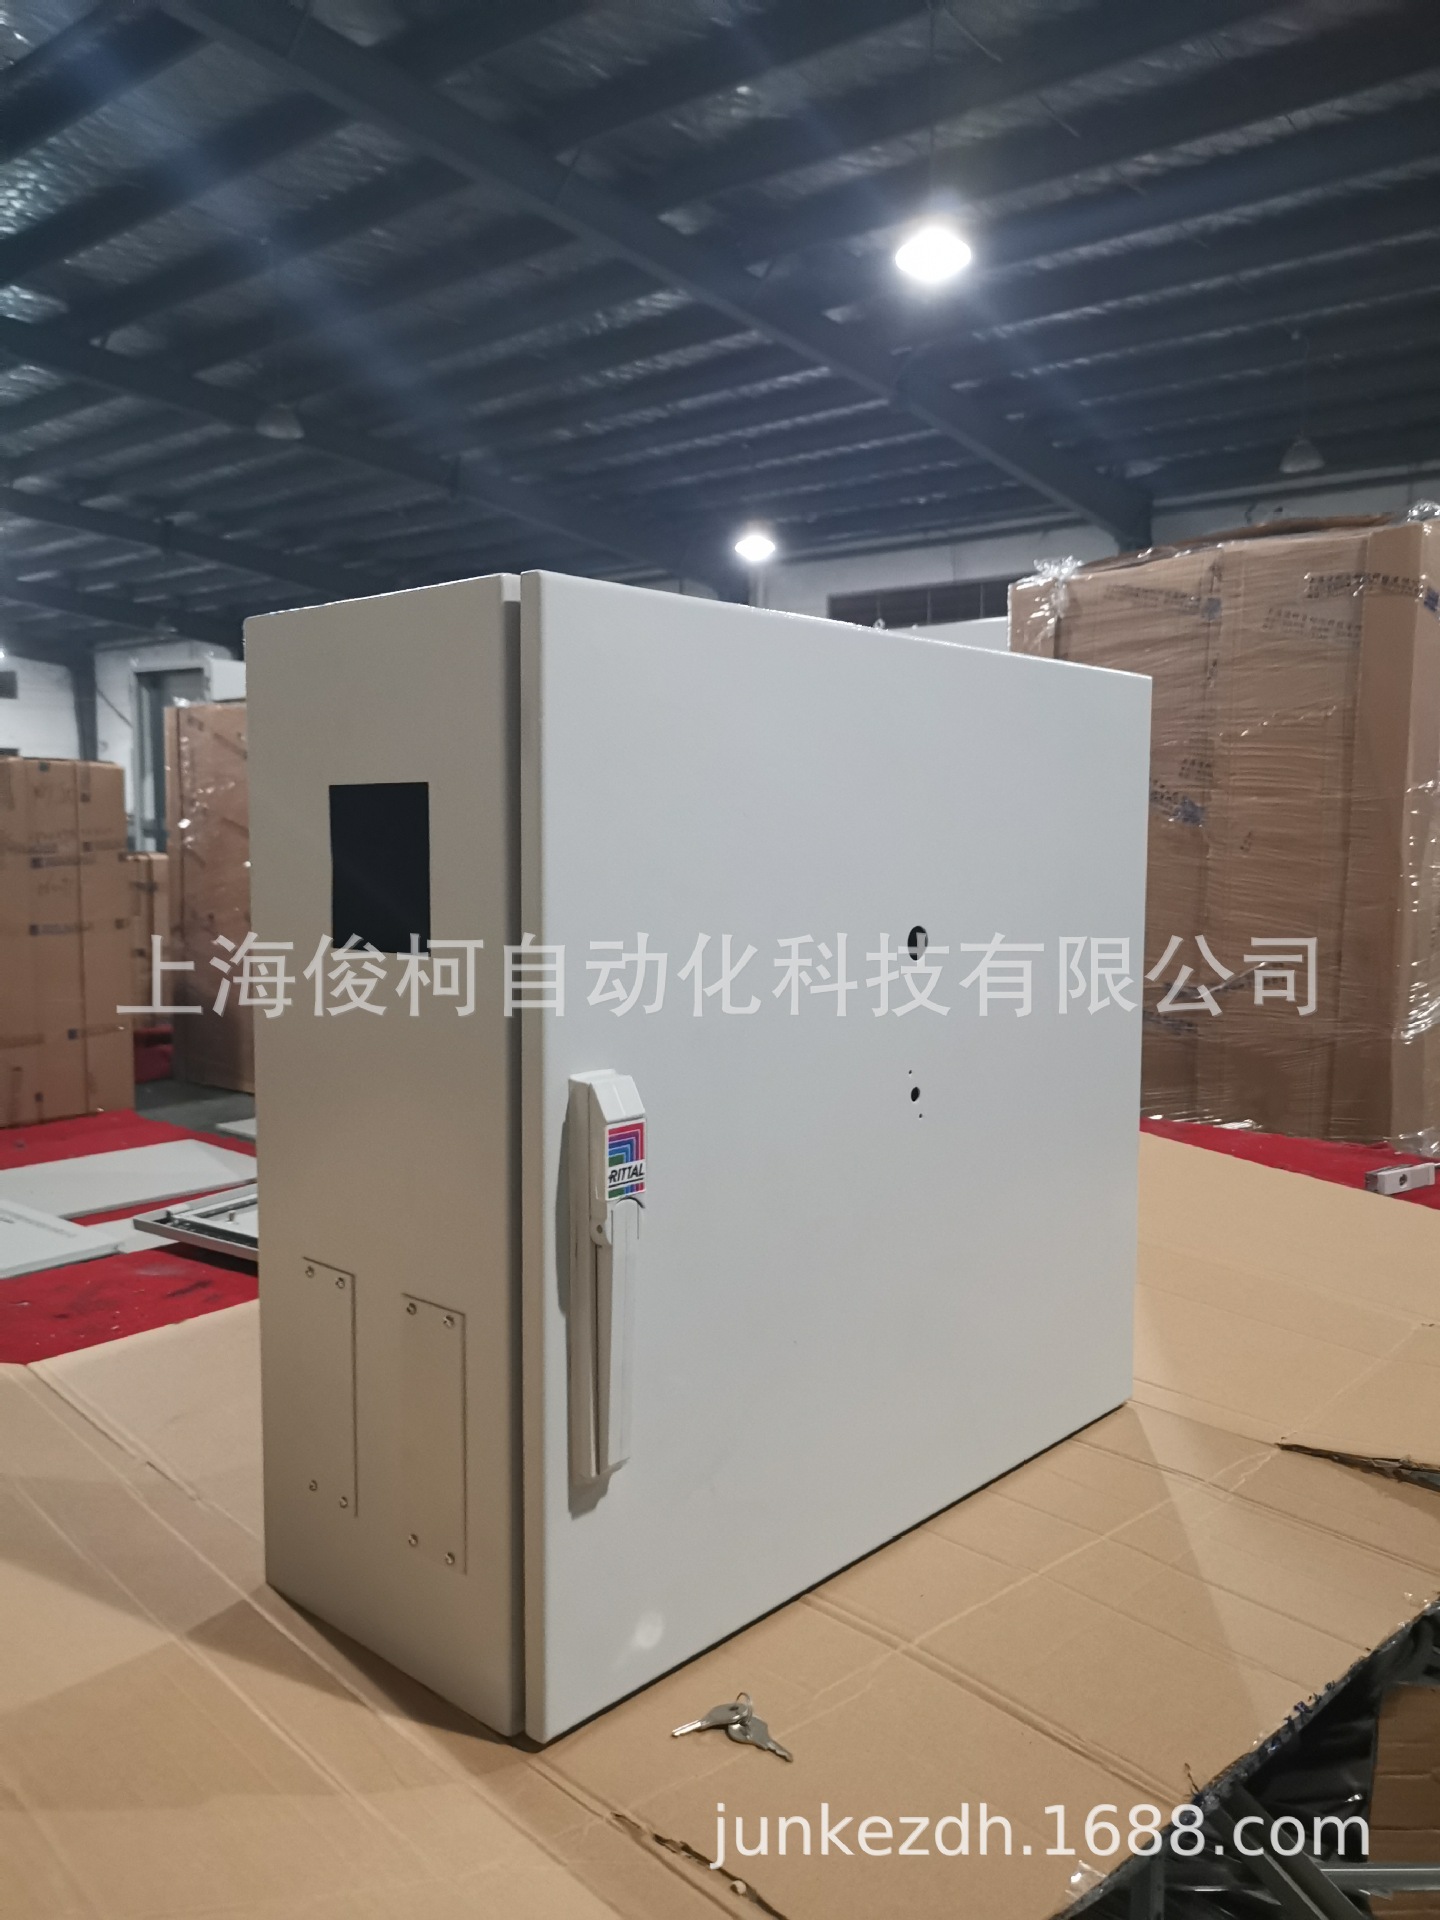 上海电气控制箱厂家 江苏电气控制箱价格 双开门电气控制箱型号尺